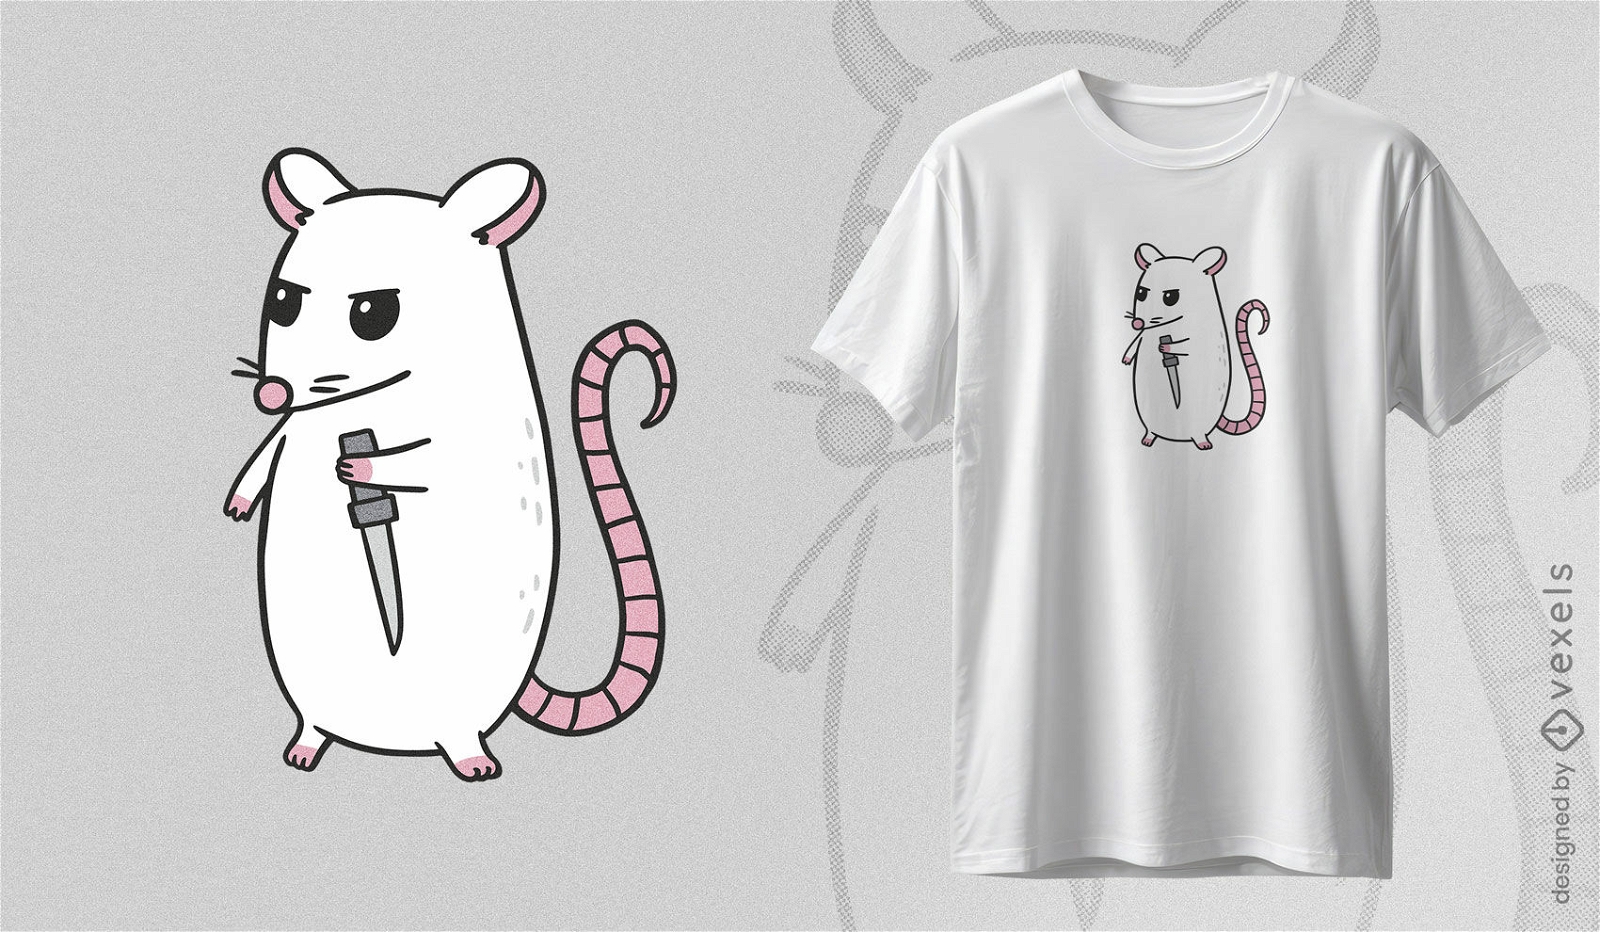 Psycho rat t-shirt design